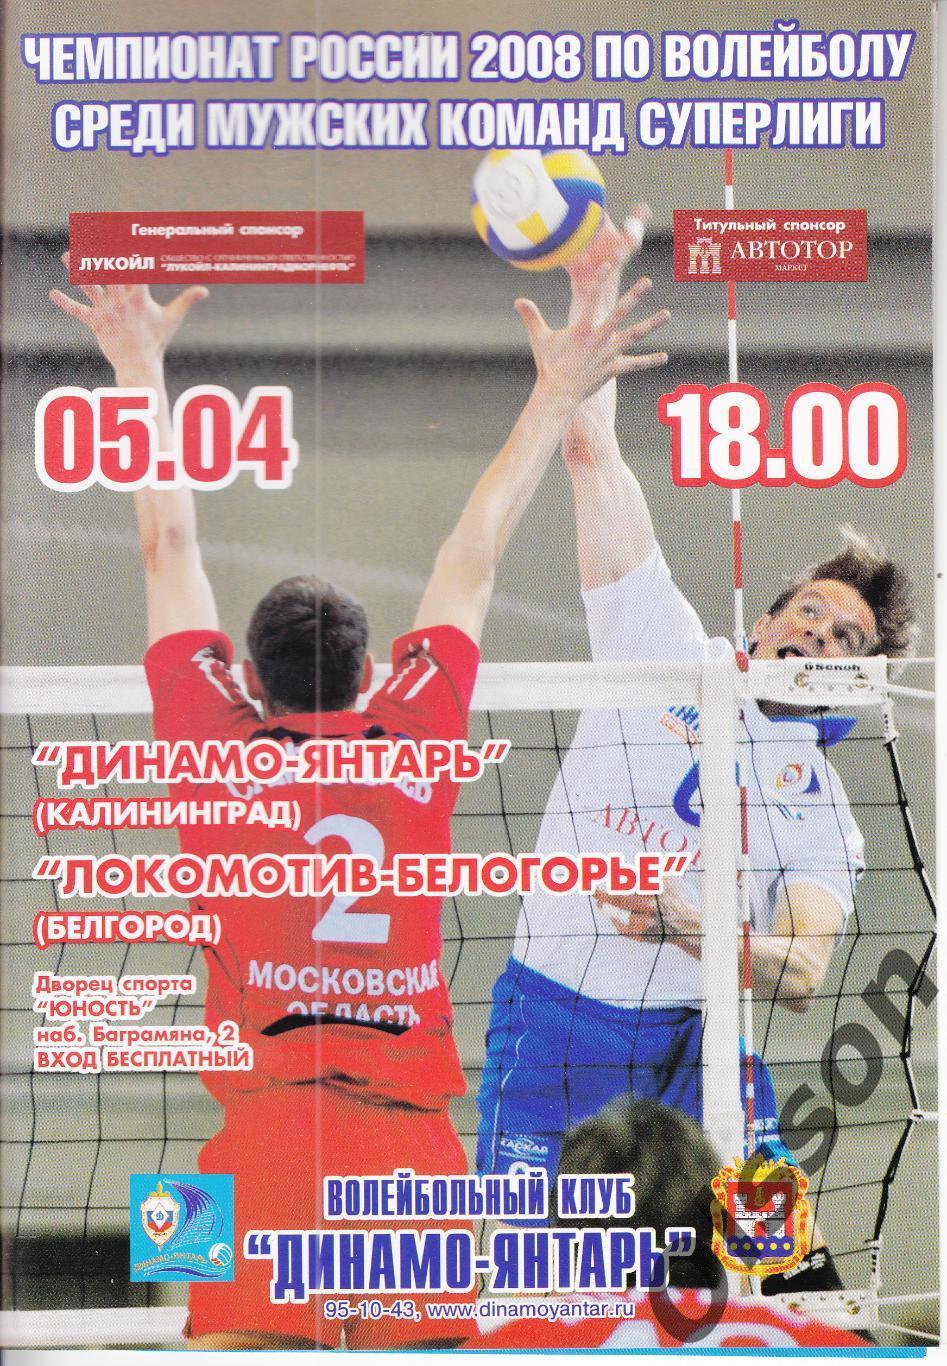 Динамо-Янтарь Калининград - Локомотив-Белогорье Белгород 05.04.2008